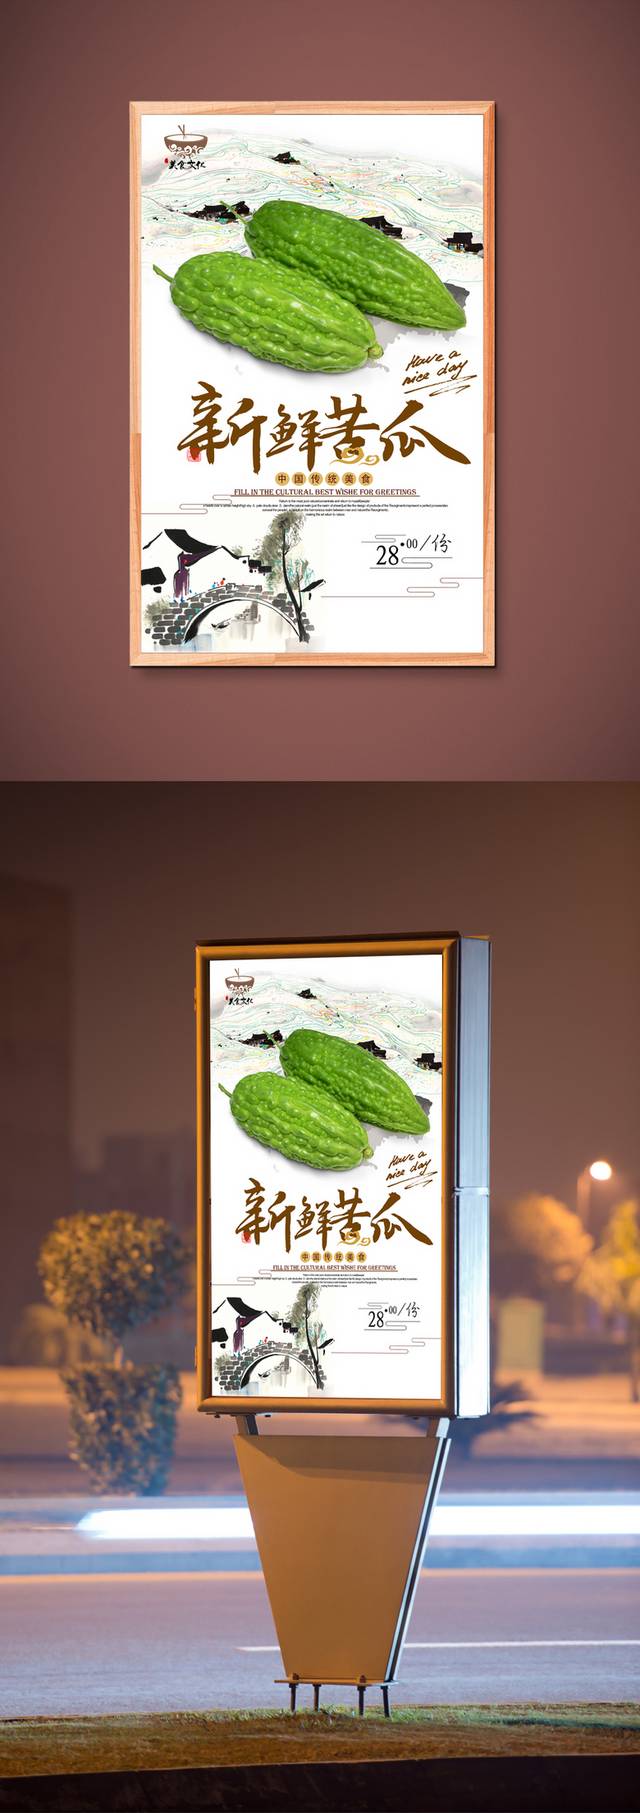 经典中国风苦瓜海报宣传设计